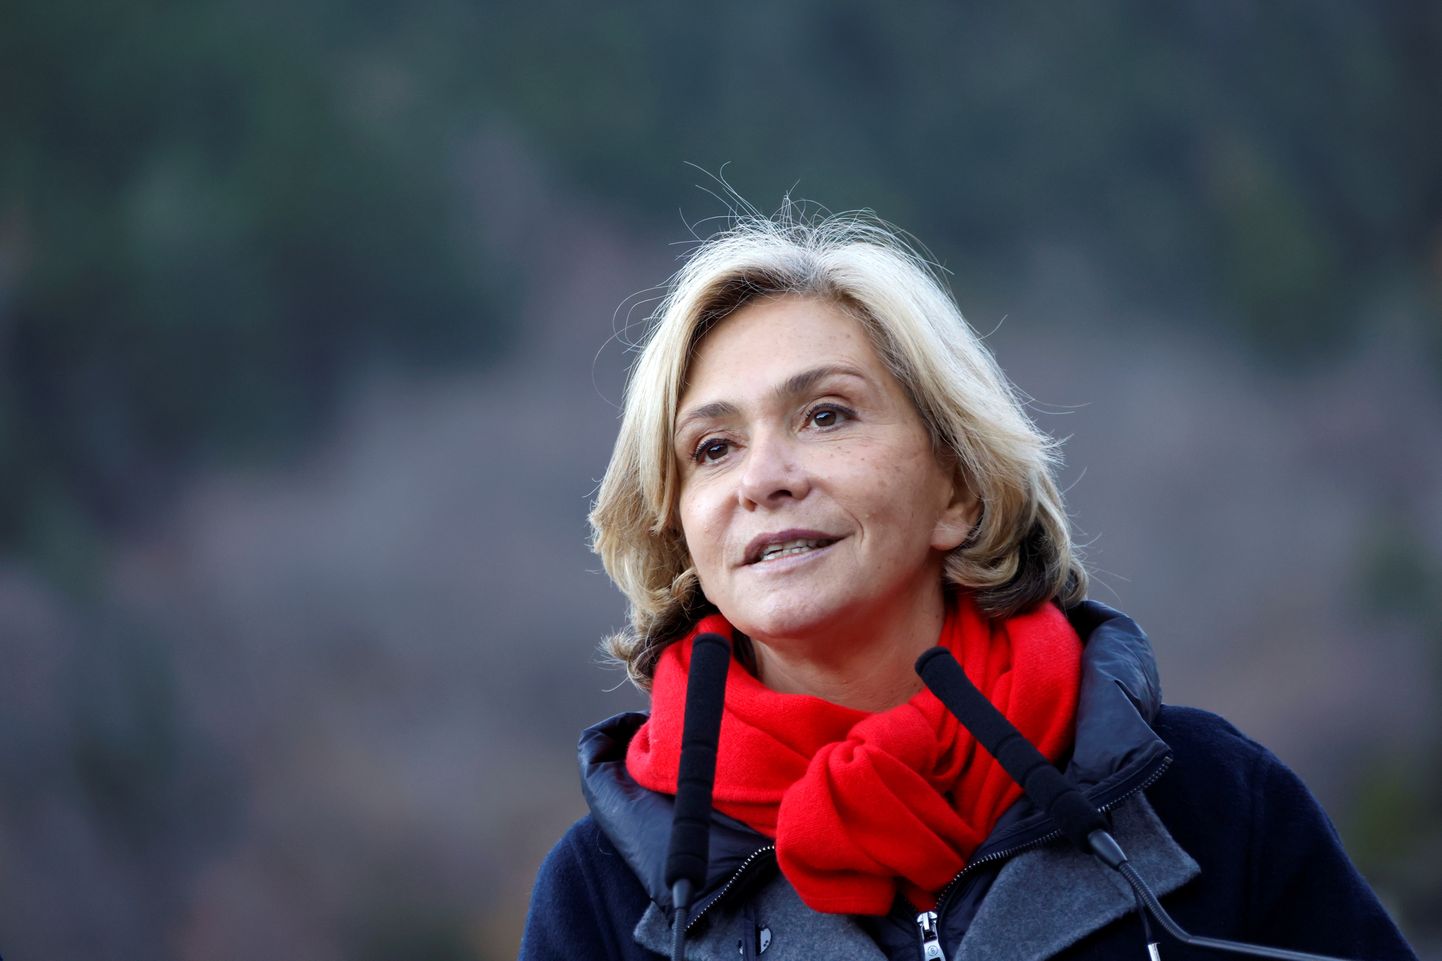 Prantsuse konservatiivse partei Vabariiklased (LR) presidendikandidaadiks valitud Valérie Pécresse.